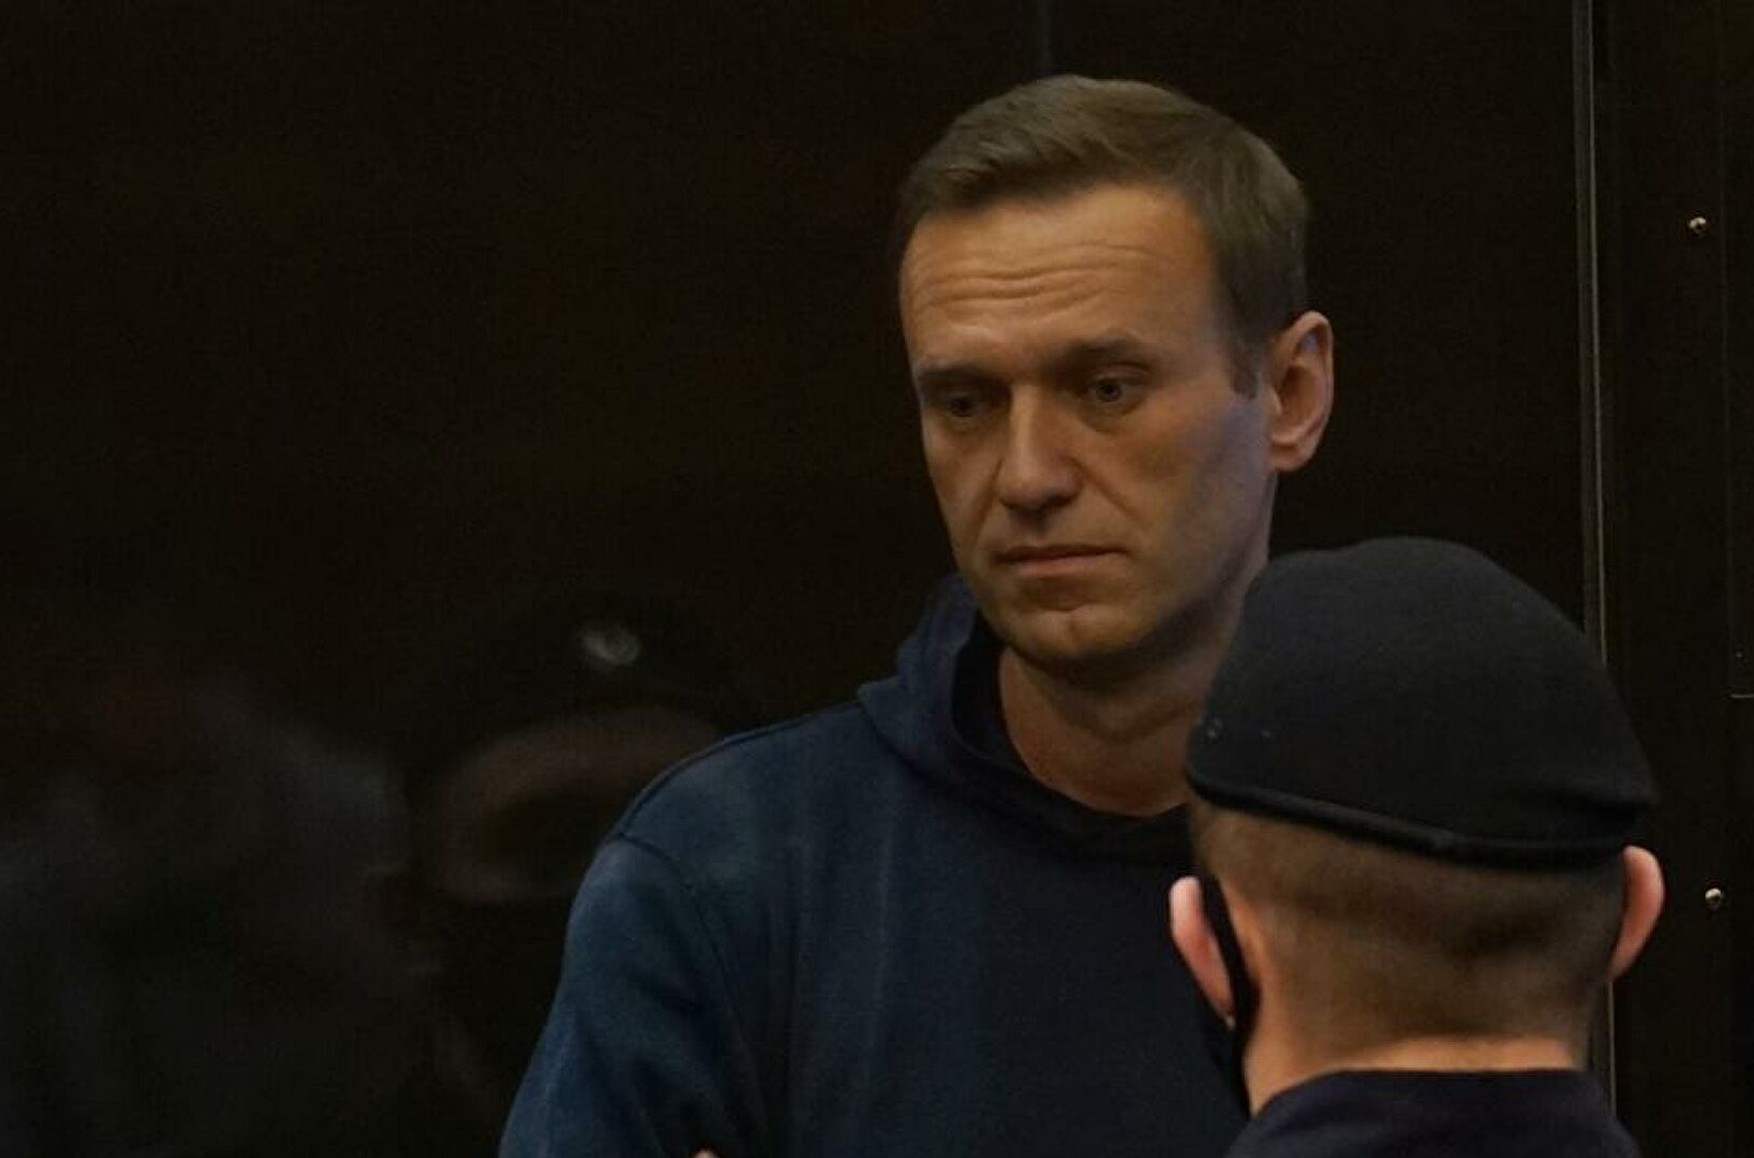 Більше 500 російських лікарів підписали відкрите звернення у зв'язку з ситуацією з Навальним